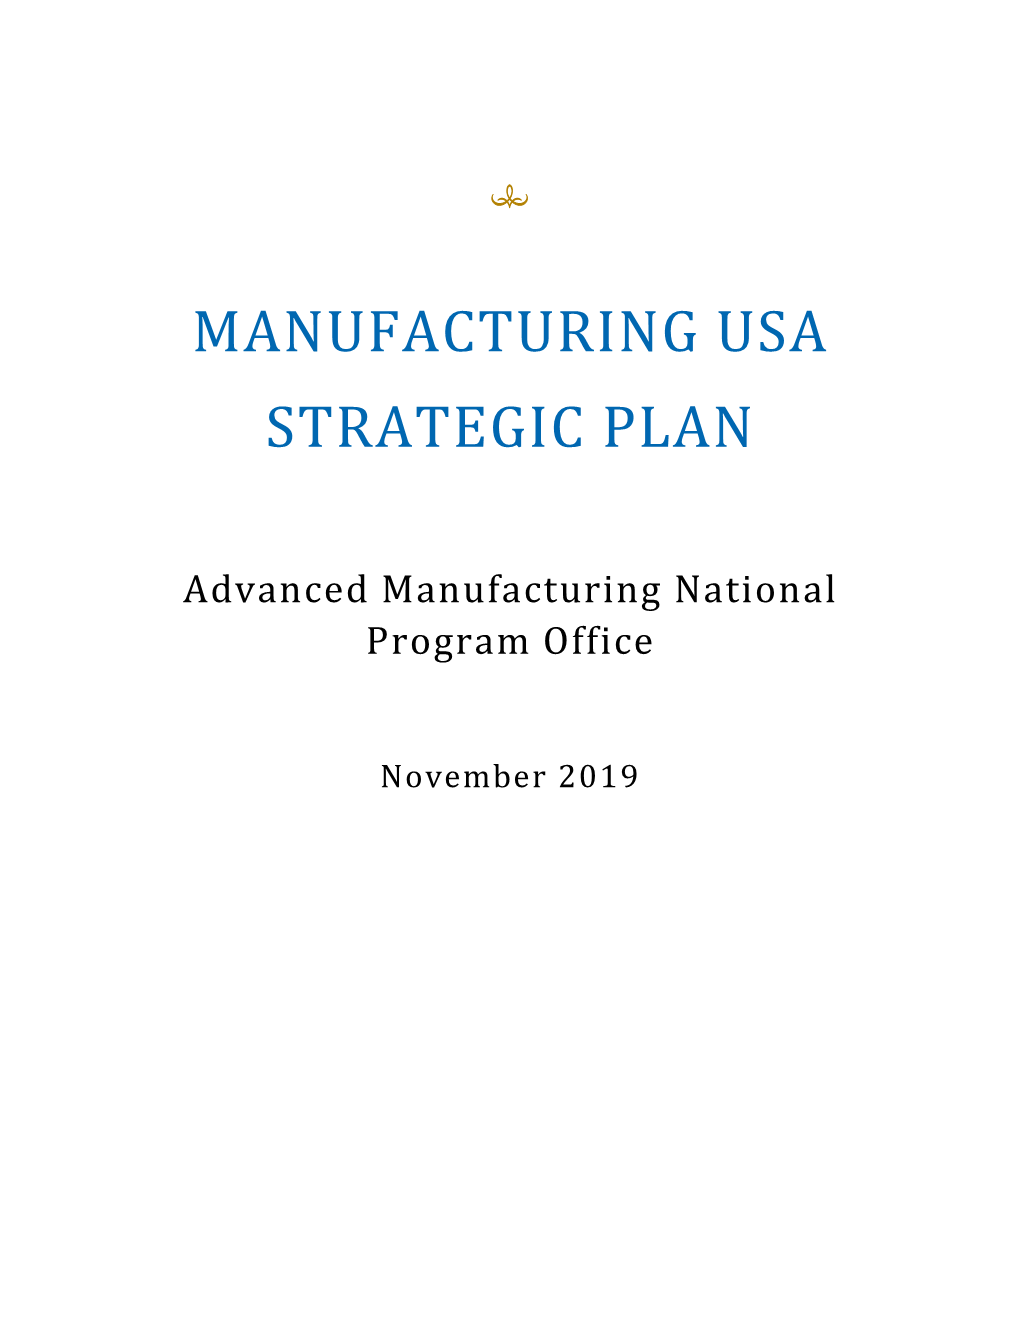 Manufacturing Usa Strategic Plan